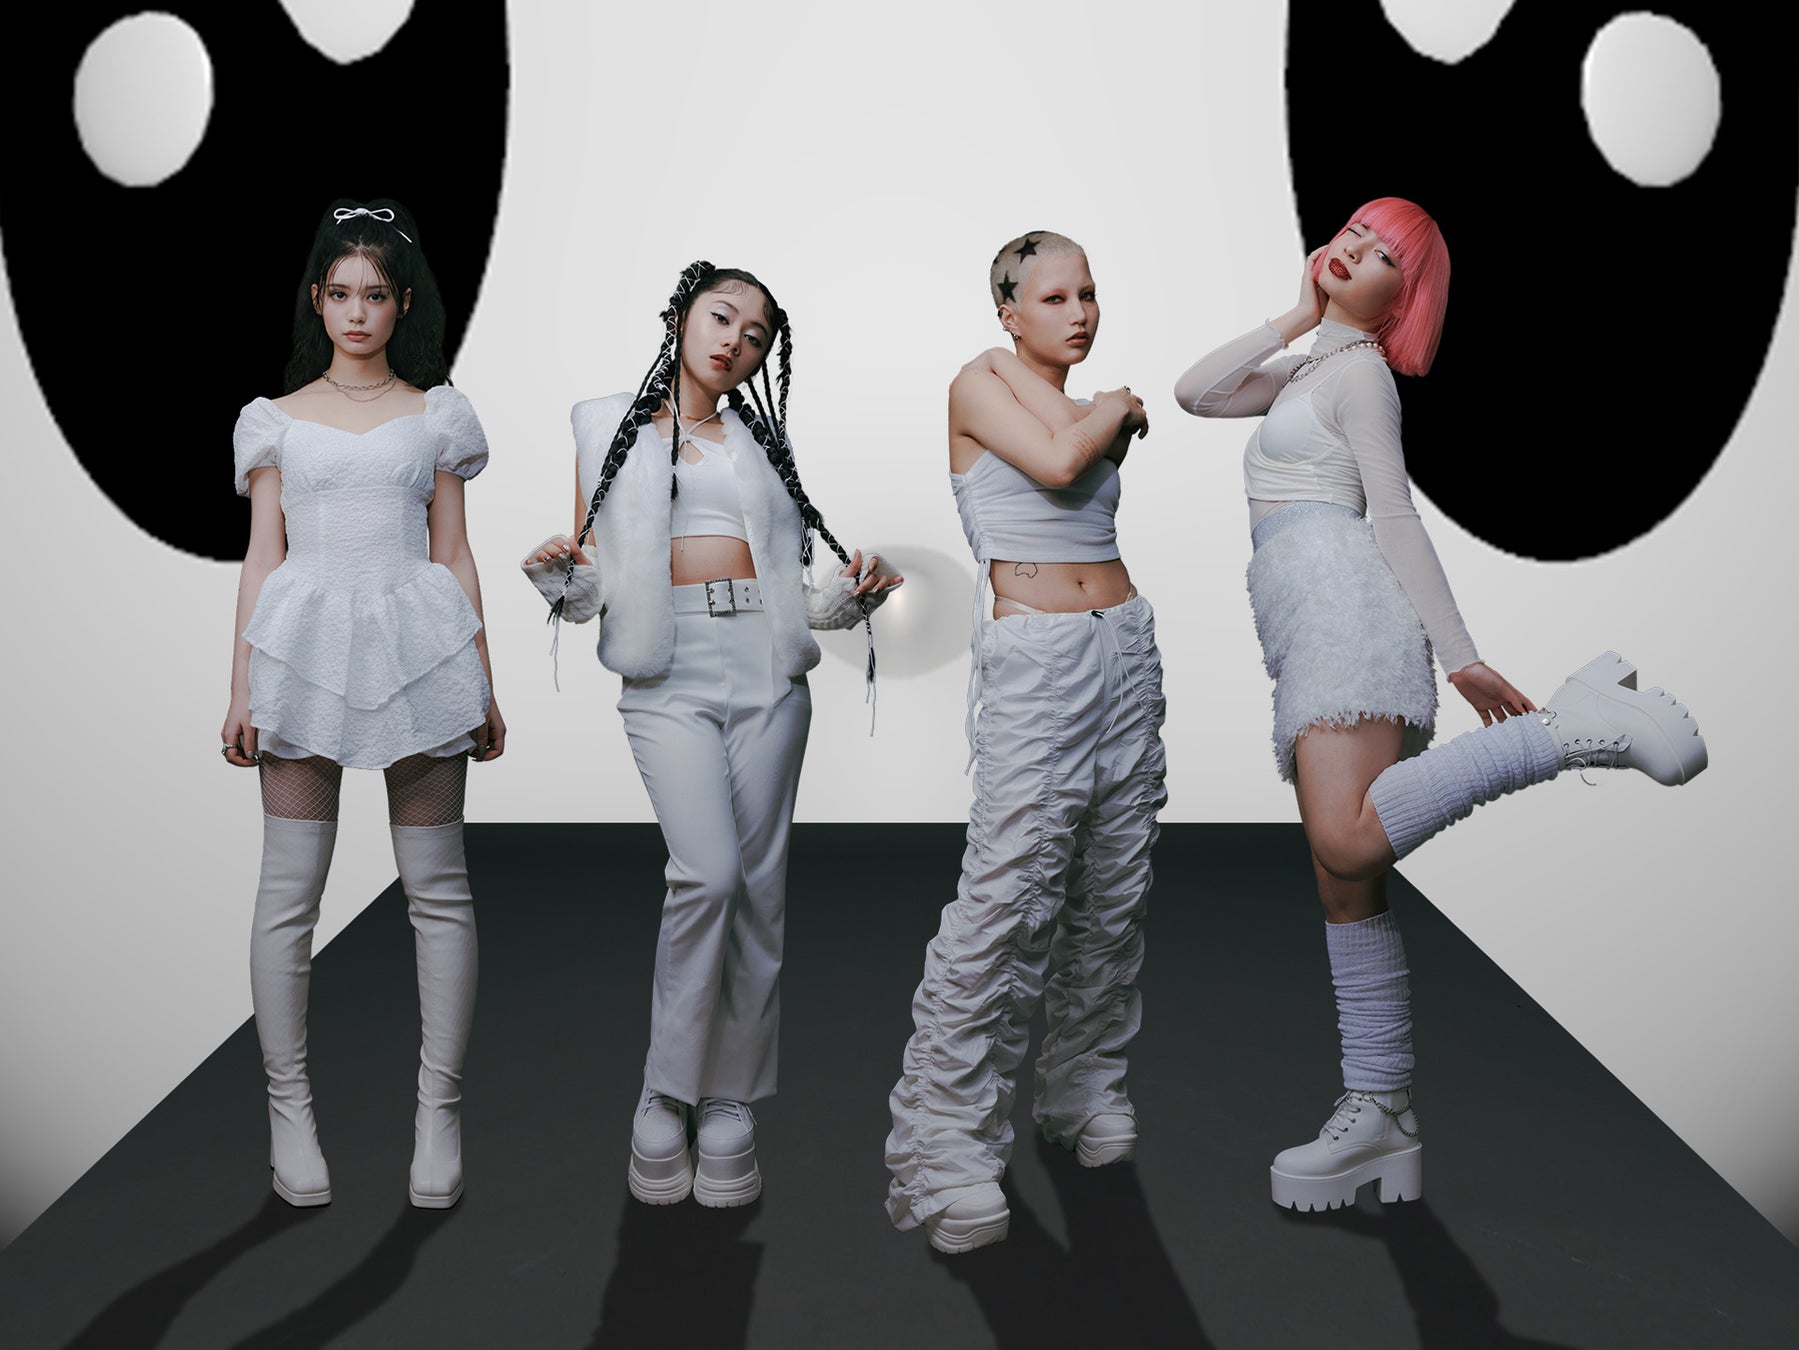 TOKYO発次世代クリエイティブ・ガールズ・コレクティブ「bala」が本格始動。大沢伸一とケンモチヒデフミが初共作した1stシングル「barla」を3月8日リリース